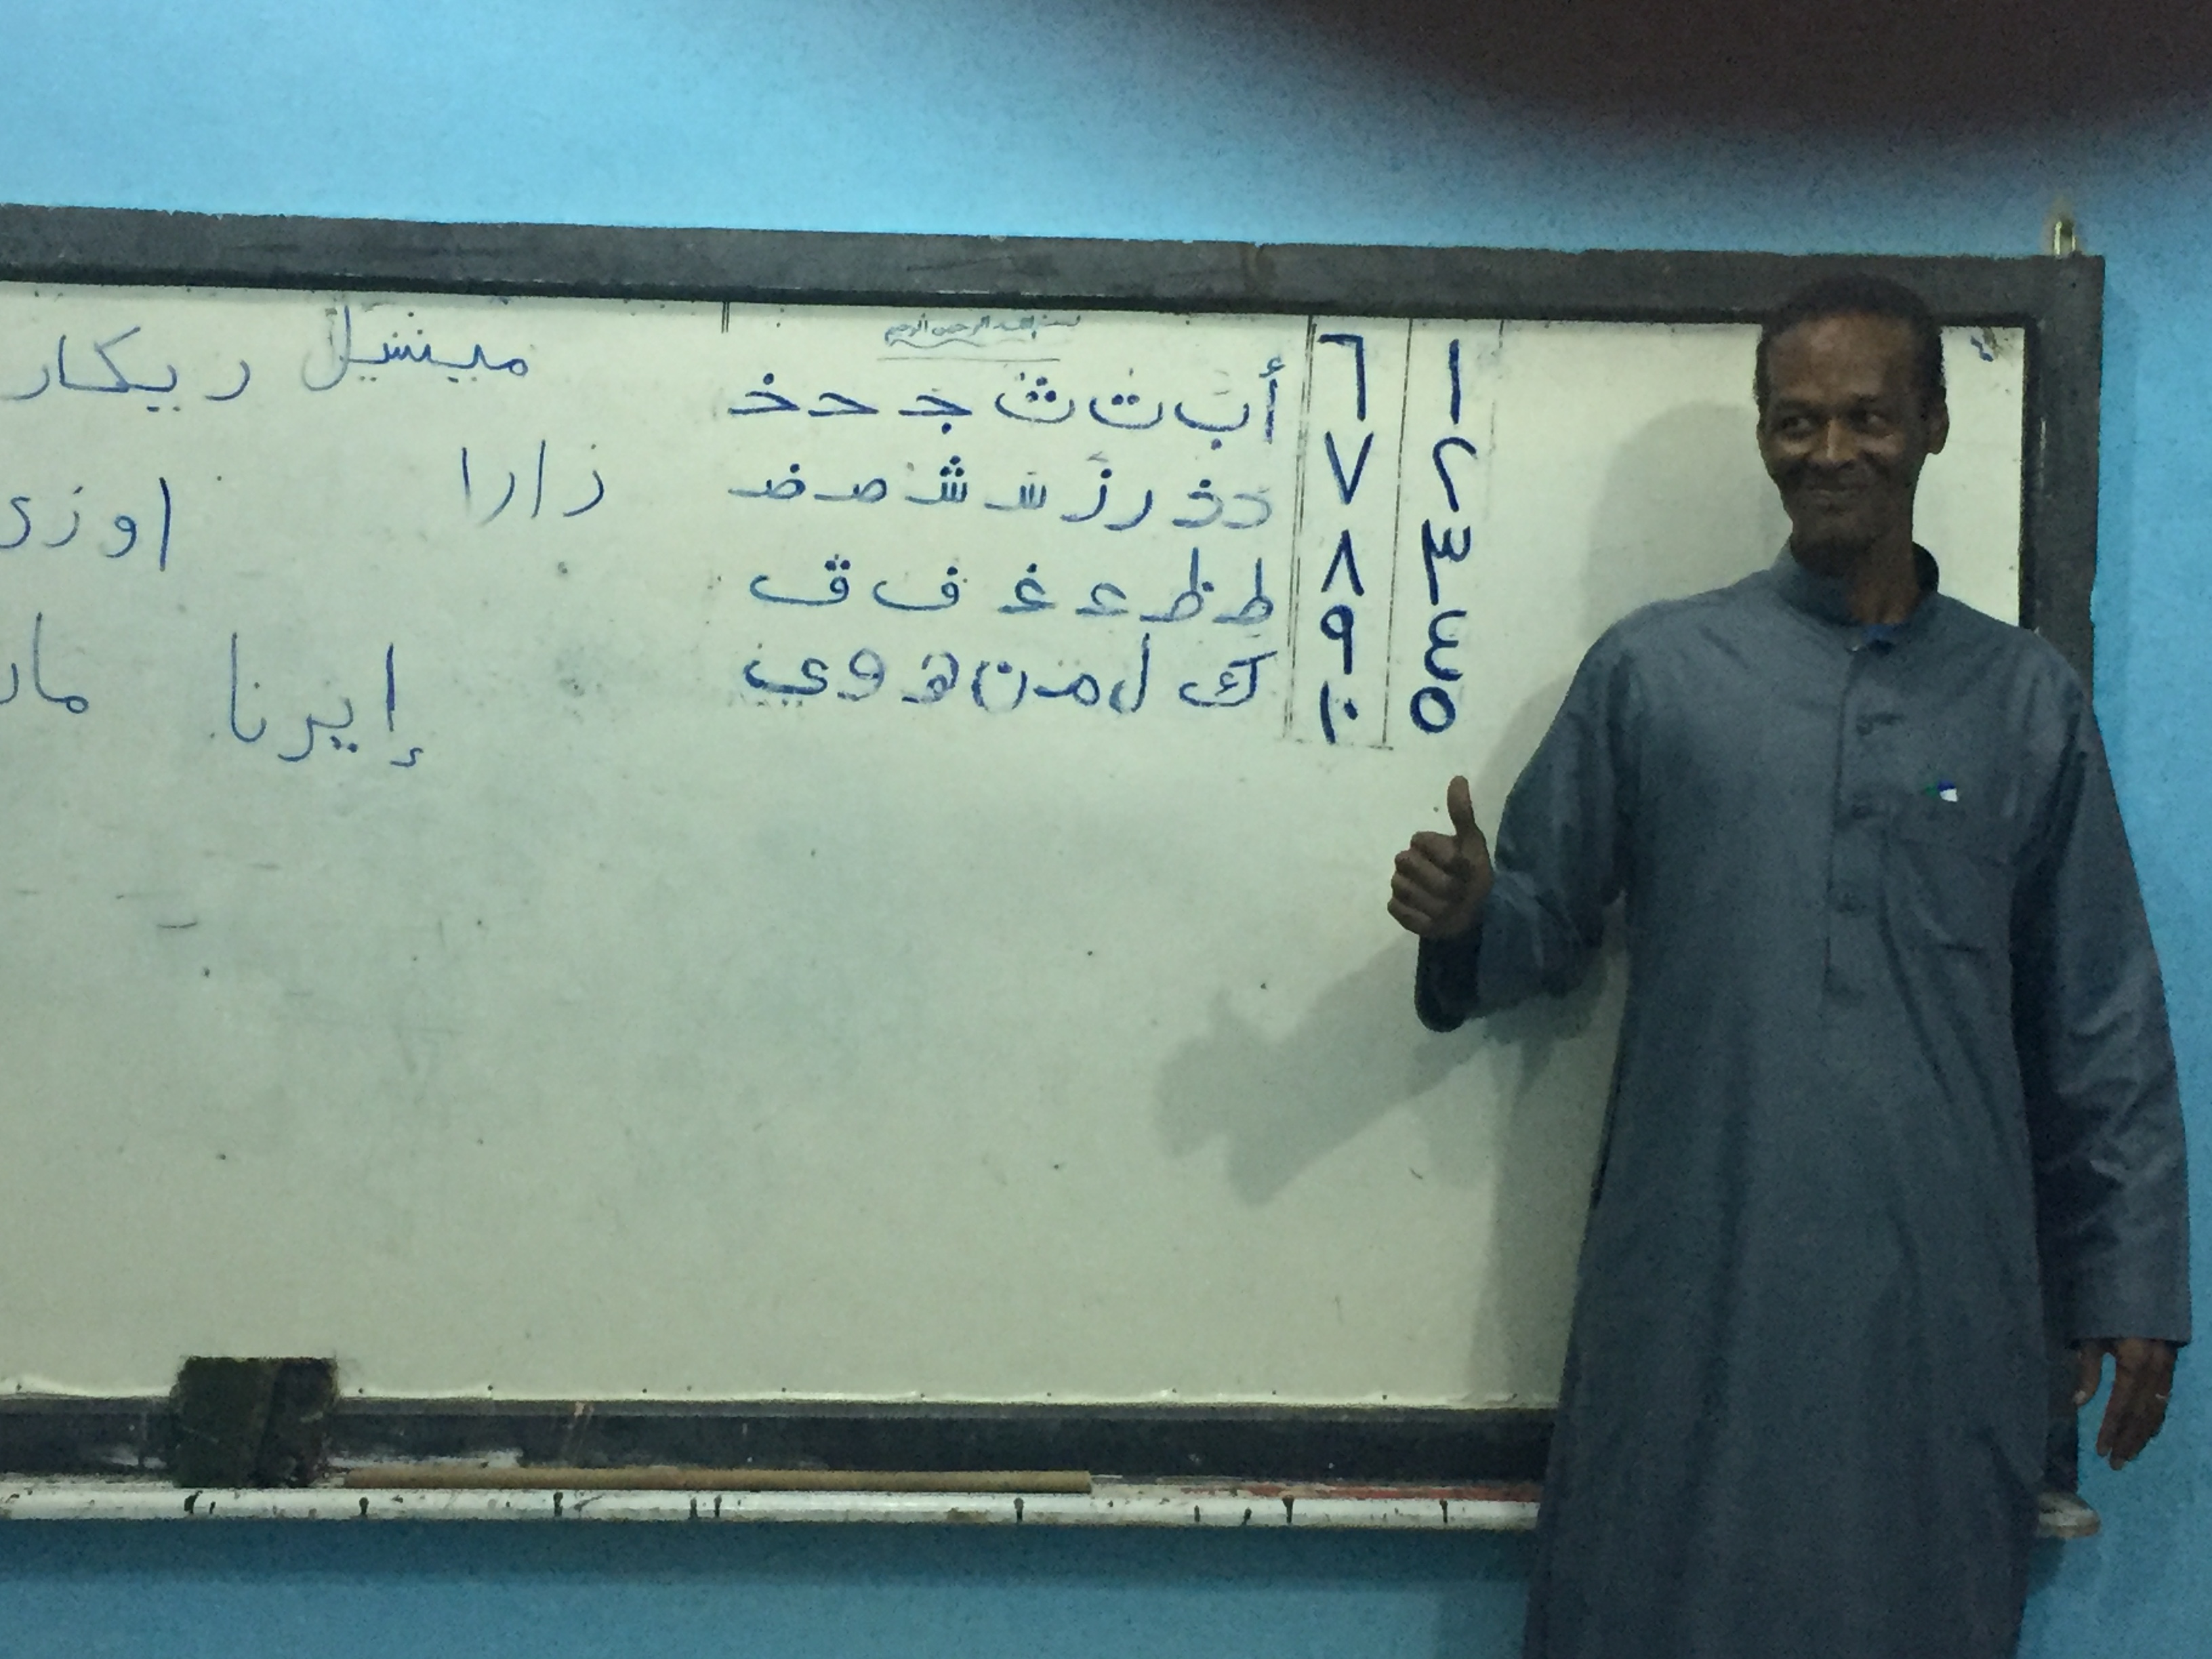 Ägyptischer Lehrer vor der Tafel im Klassenzimmer